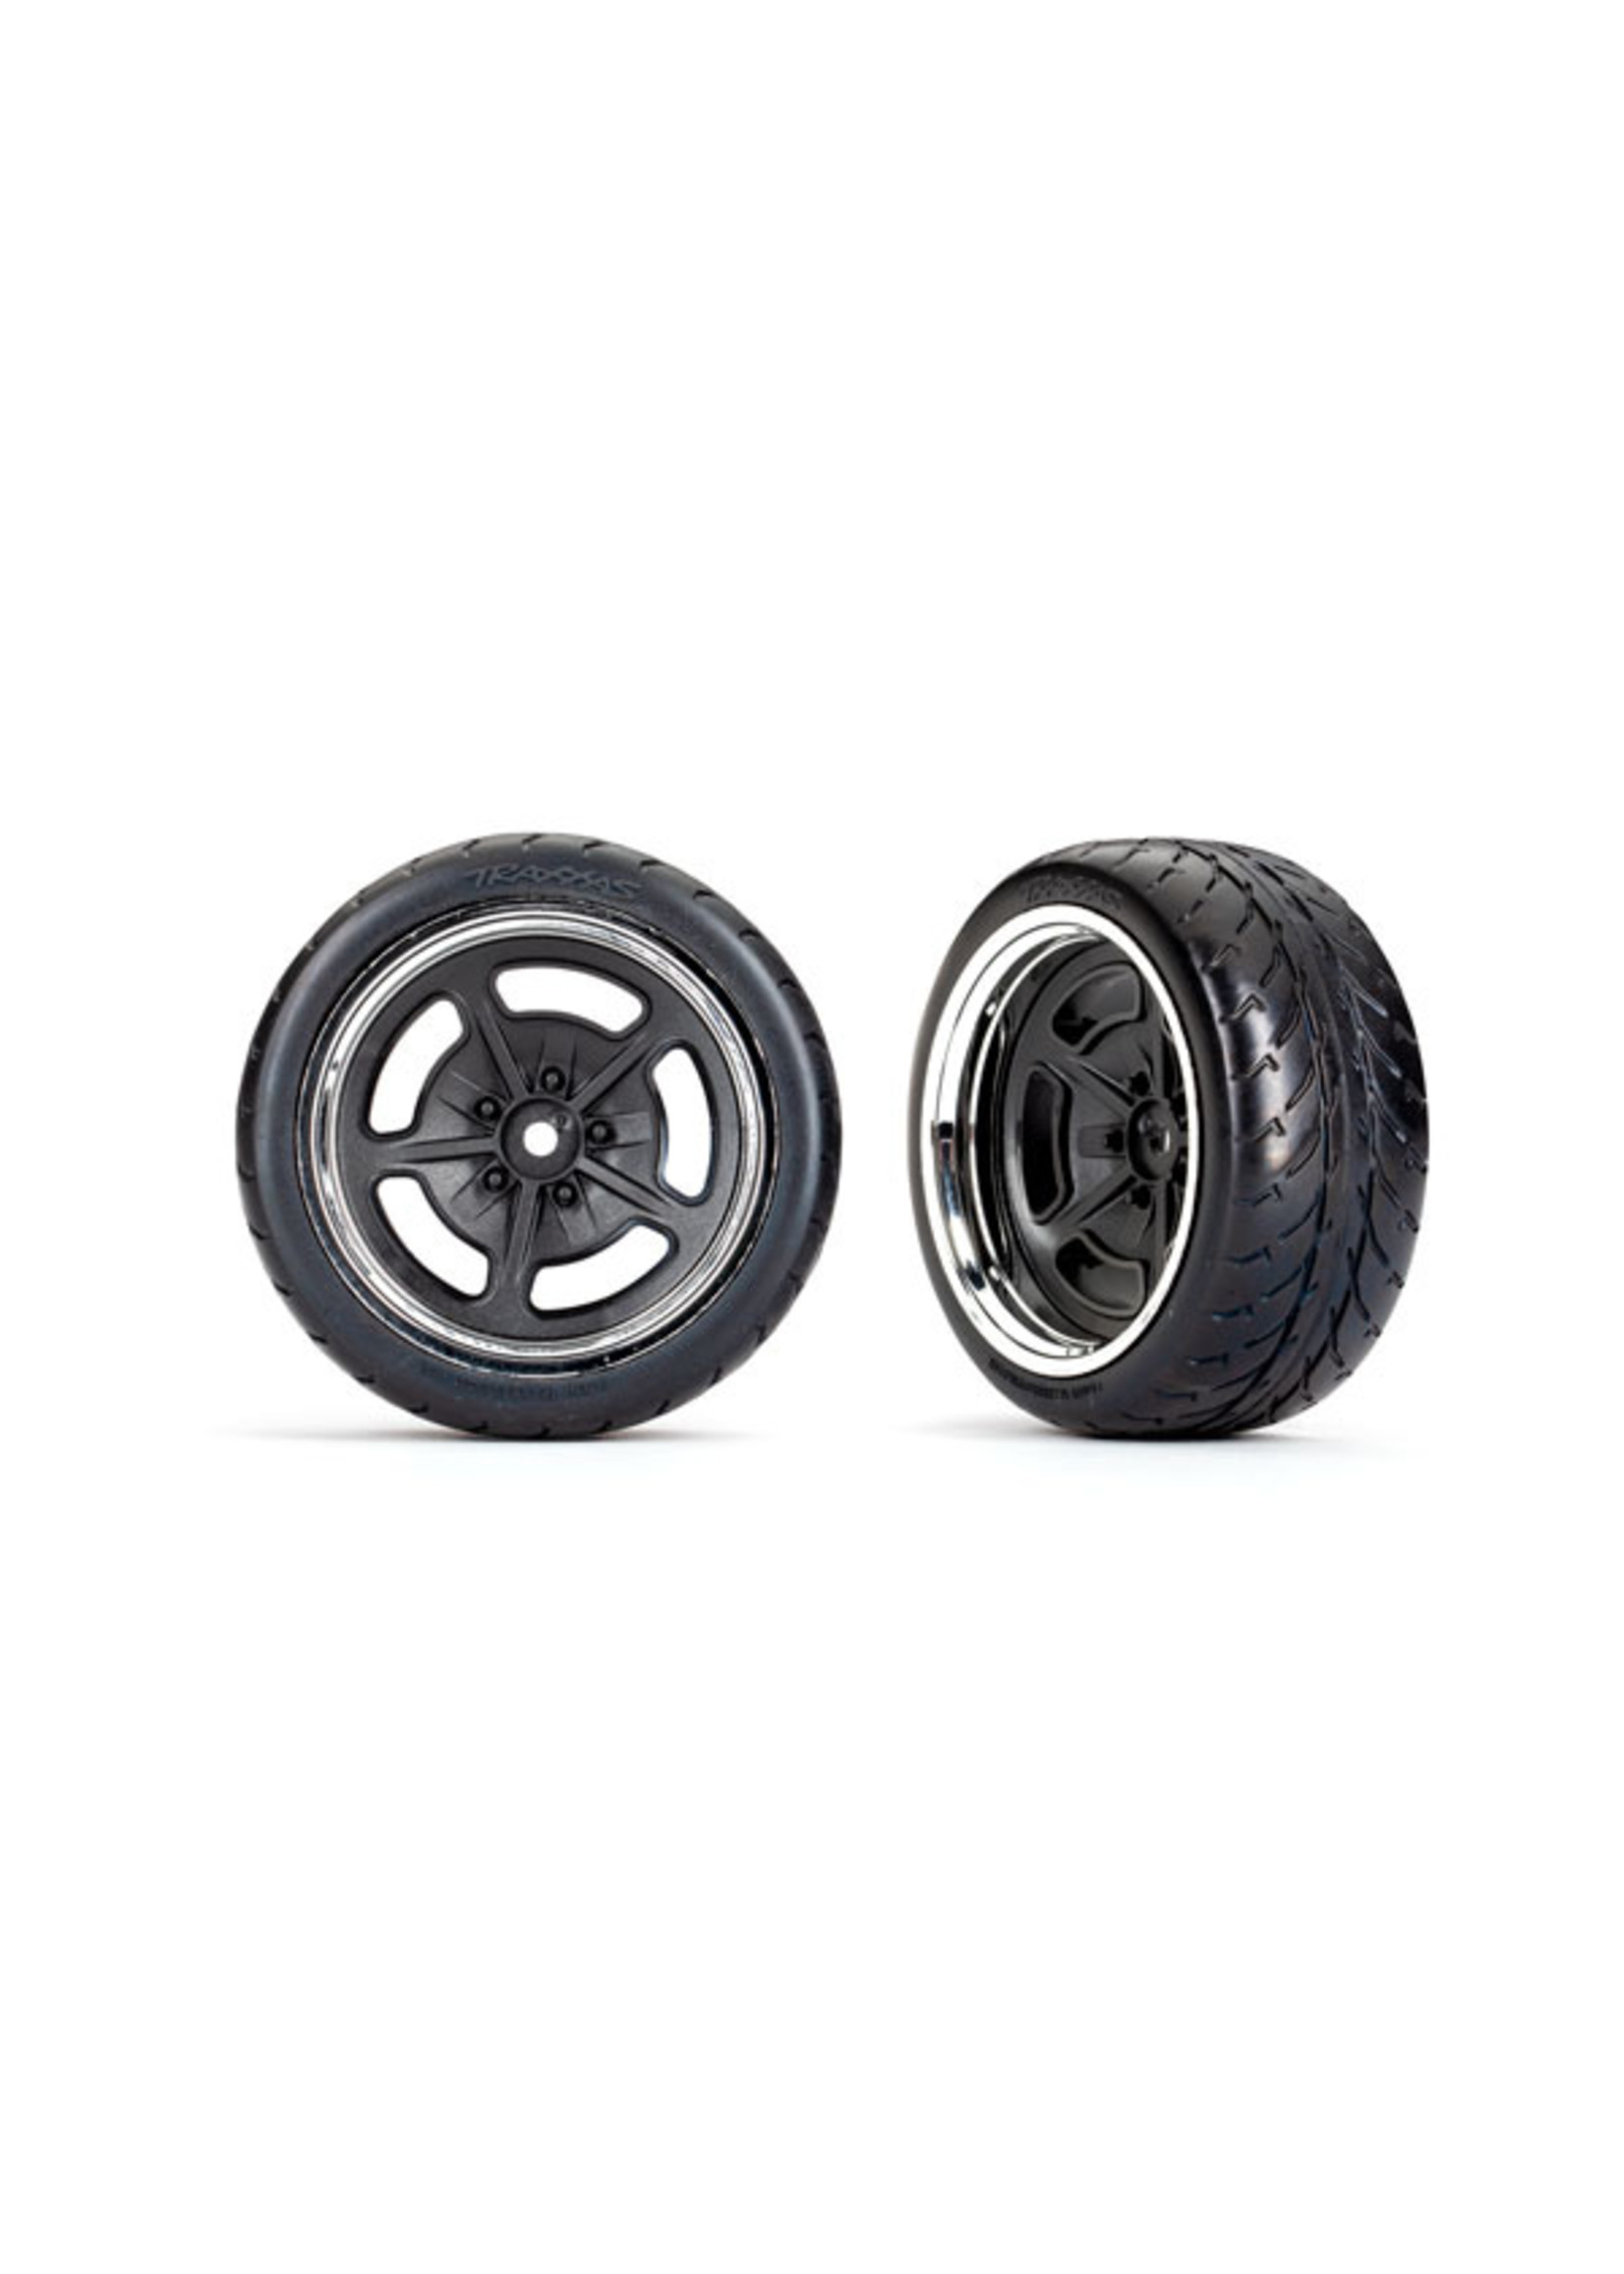 Traxxas 9373 - Split-Spoke Black with Chrome Wheels / Response Tires